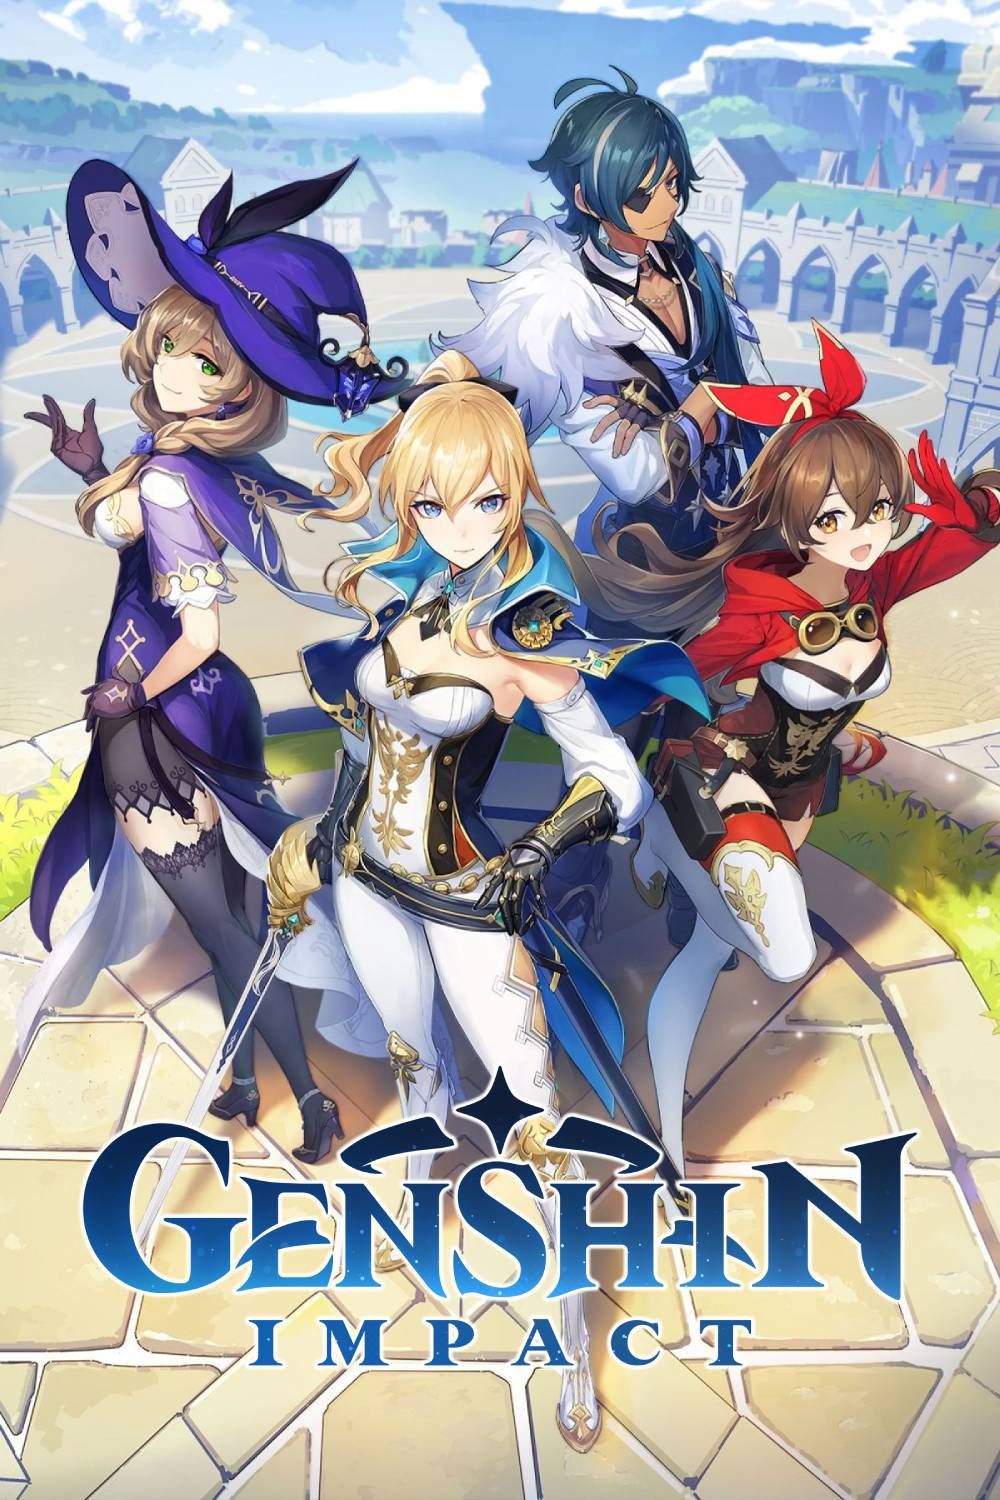 Genshin Impact Cover Art